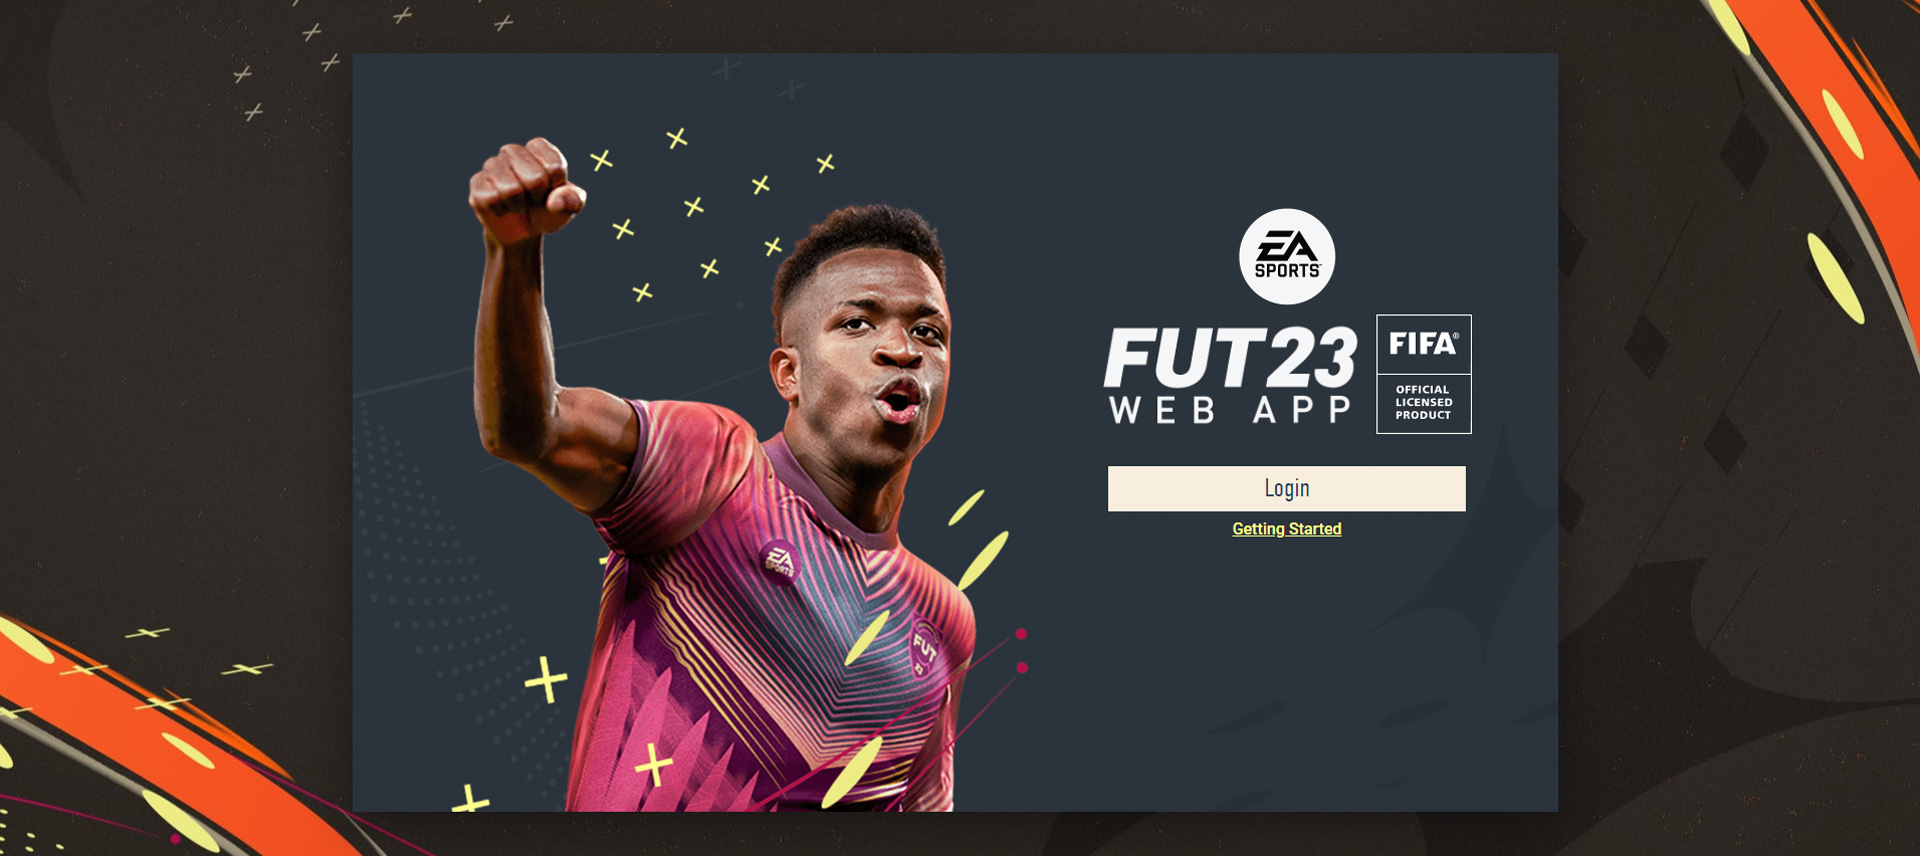 Hvordan køber man FIFA-point på en webapp?